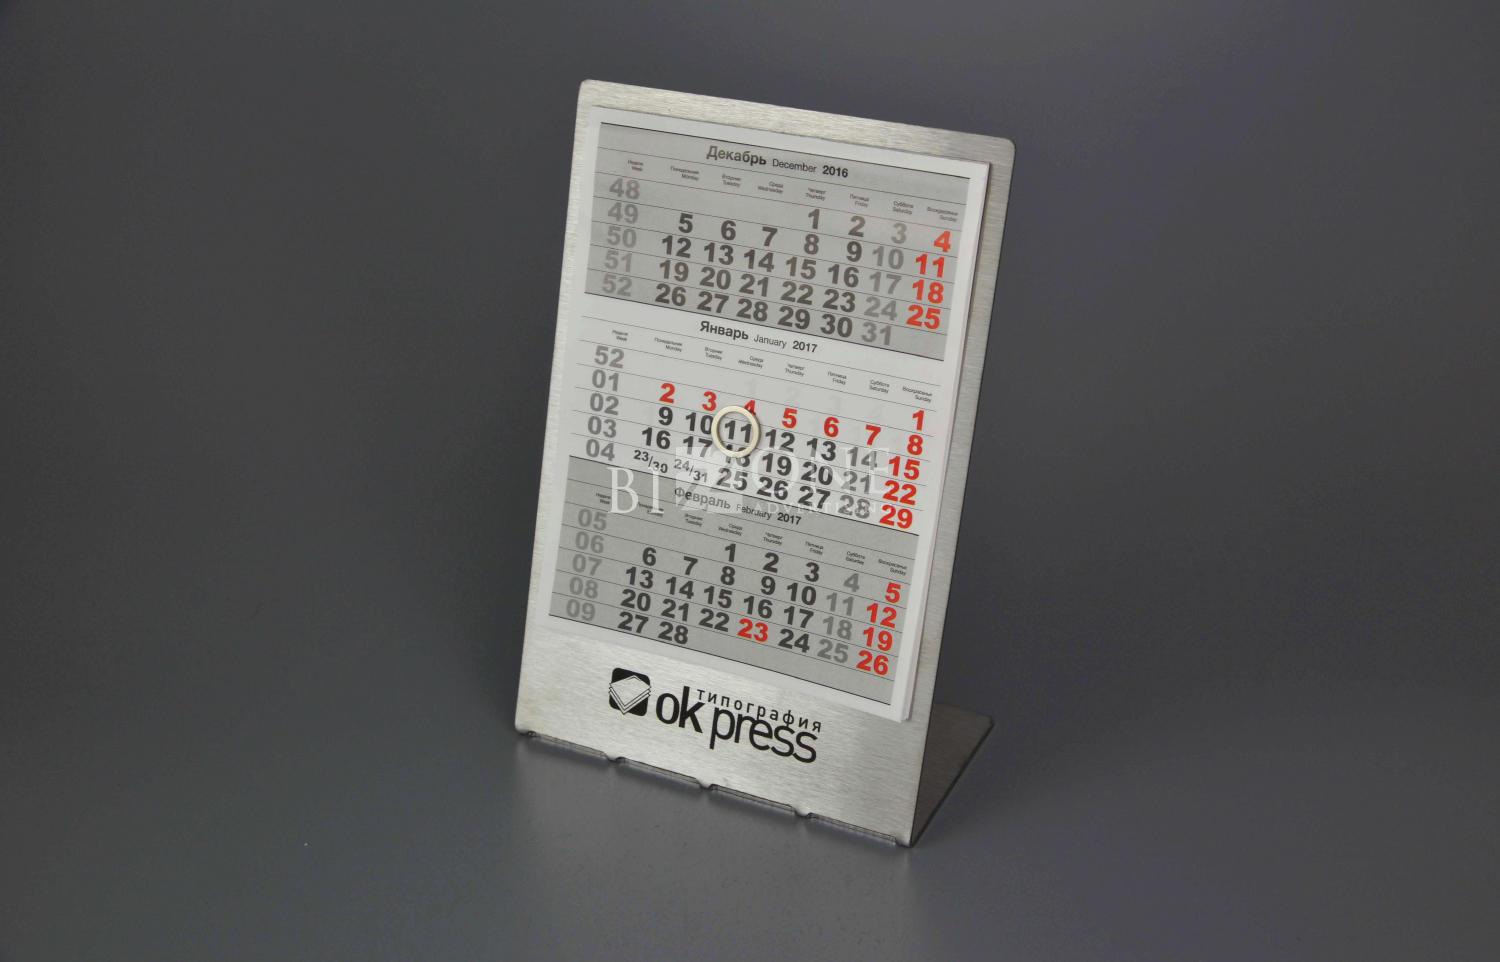 изготовление металлических календарей OK PRESS. Фотография календаря из металла с магнитным курсором